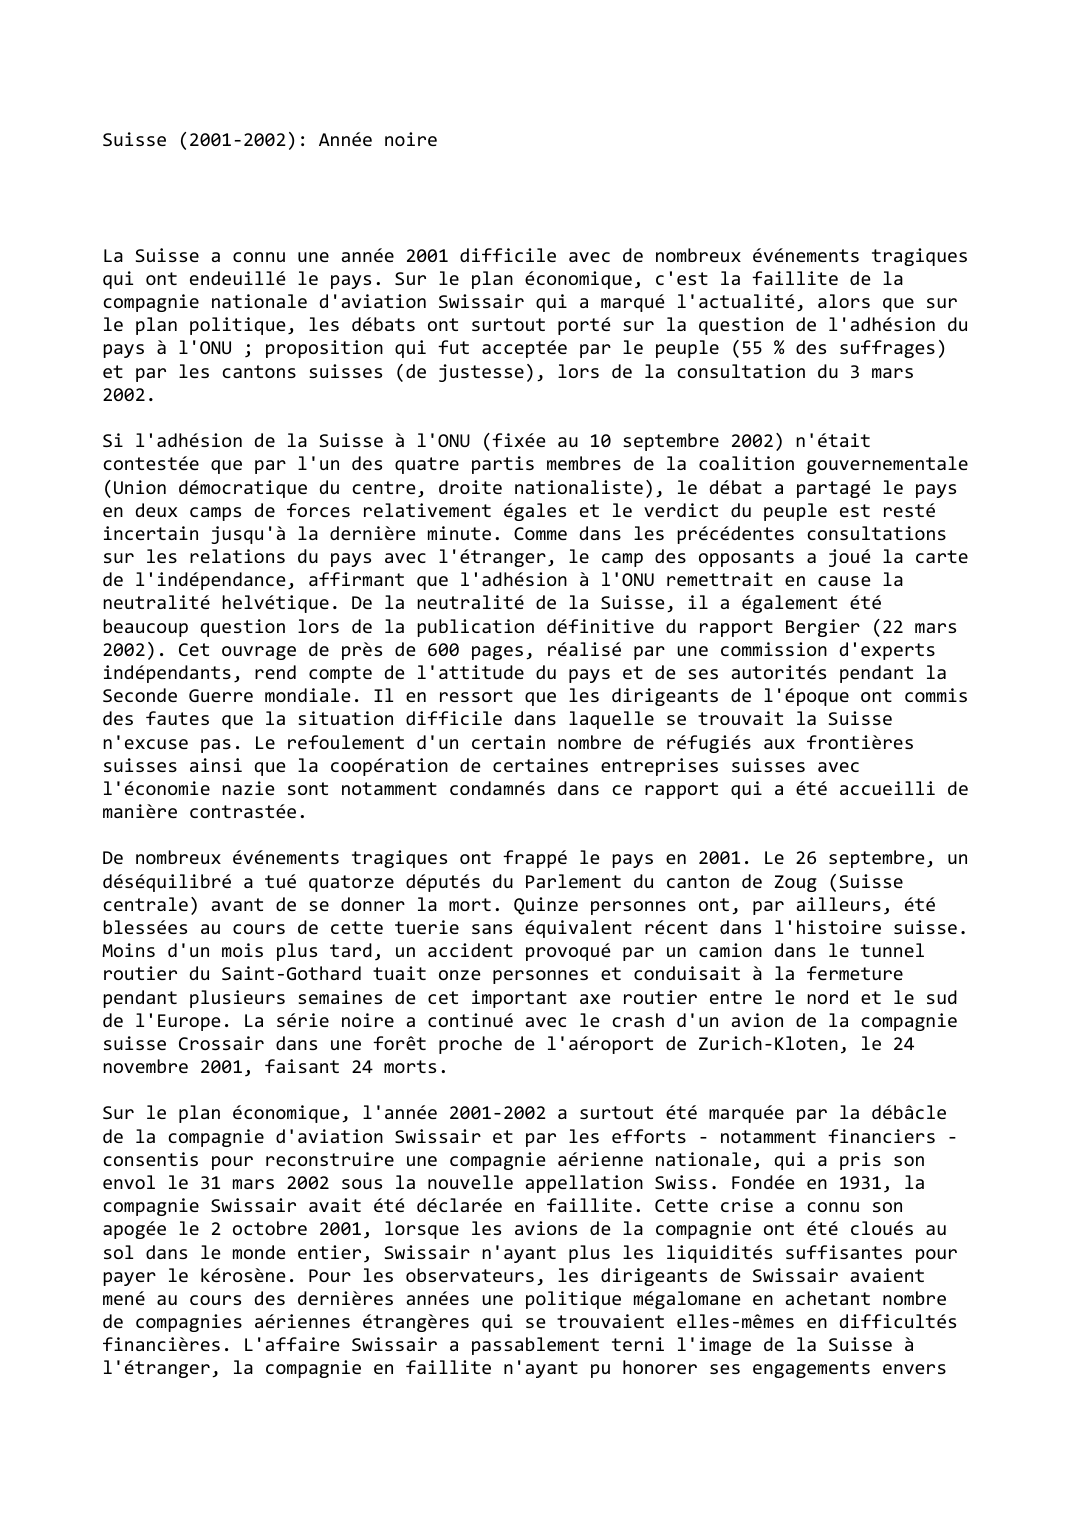 Prévisualisation du document Suisse (2001-2002): Année noire